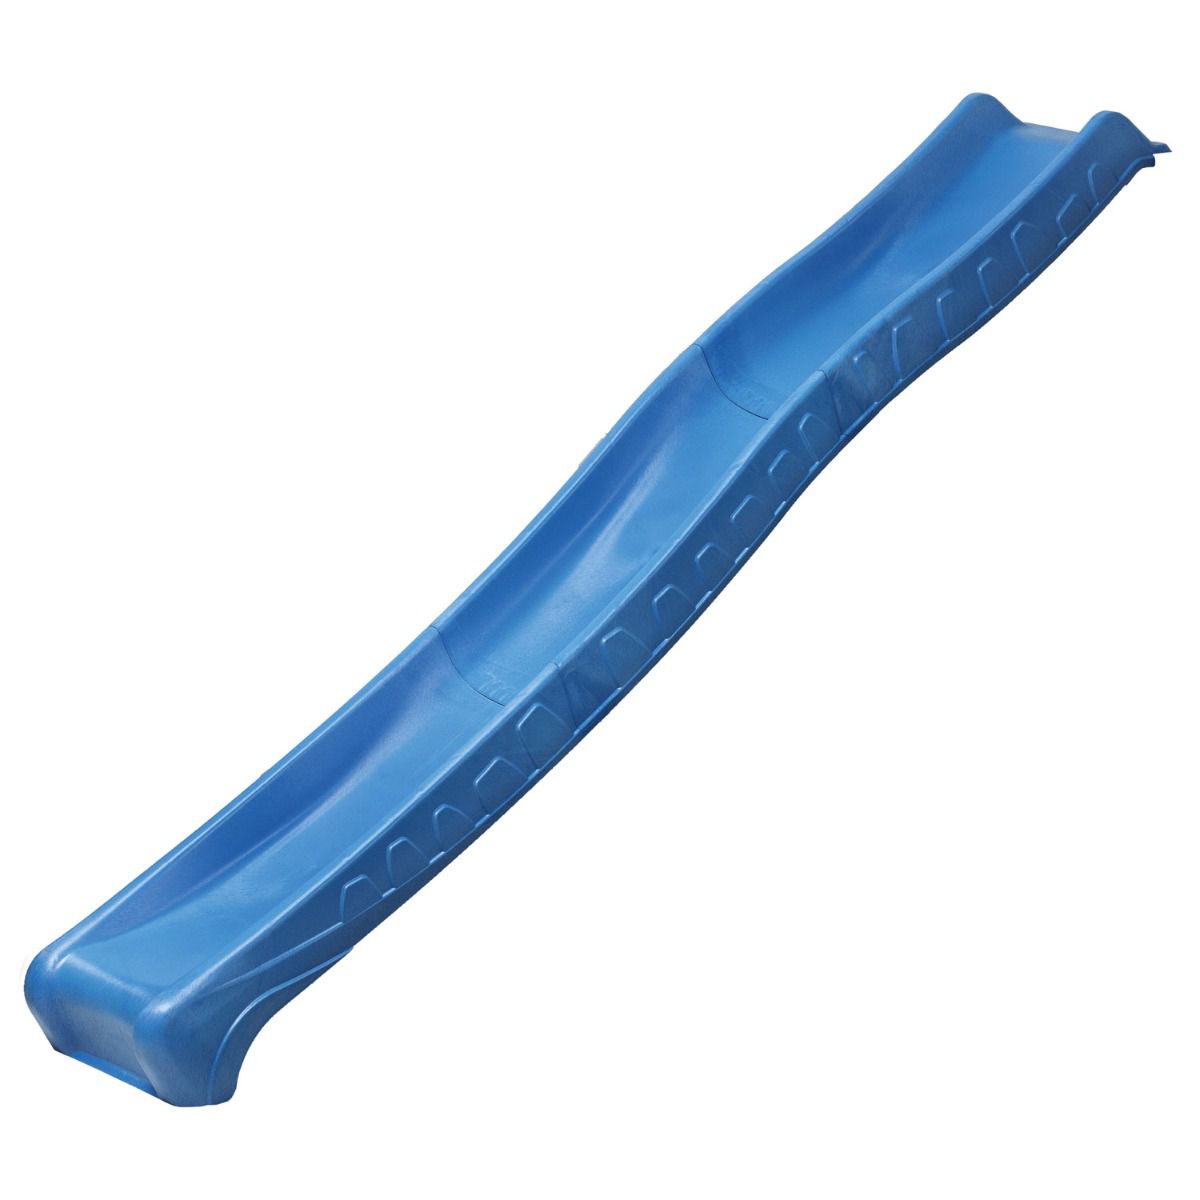 Scivolo con attacco acqua - Lunghezza 2,87 m - Colore: blu